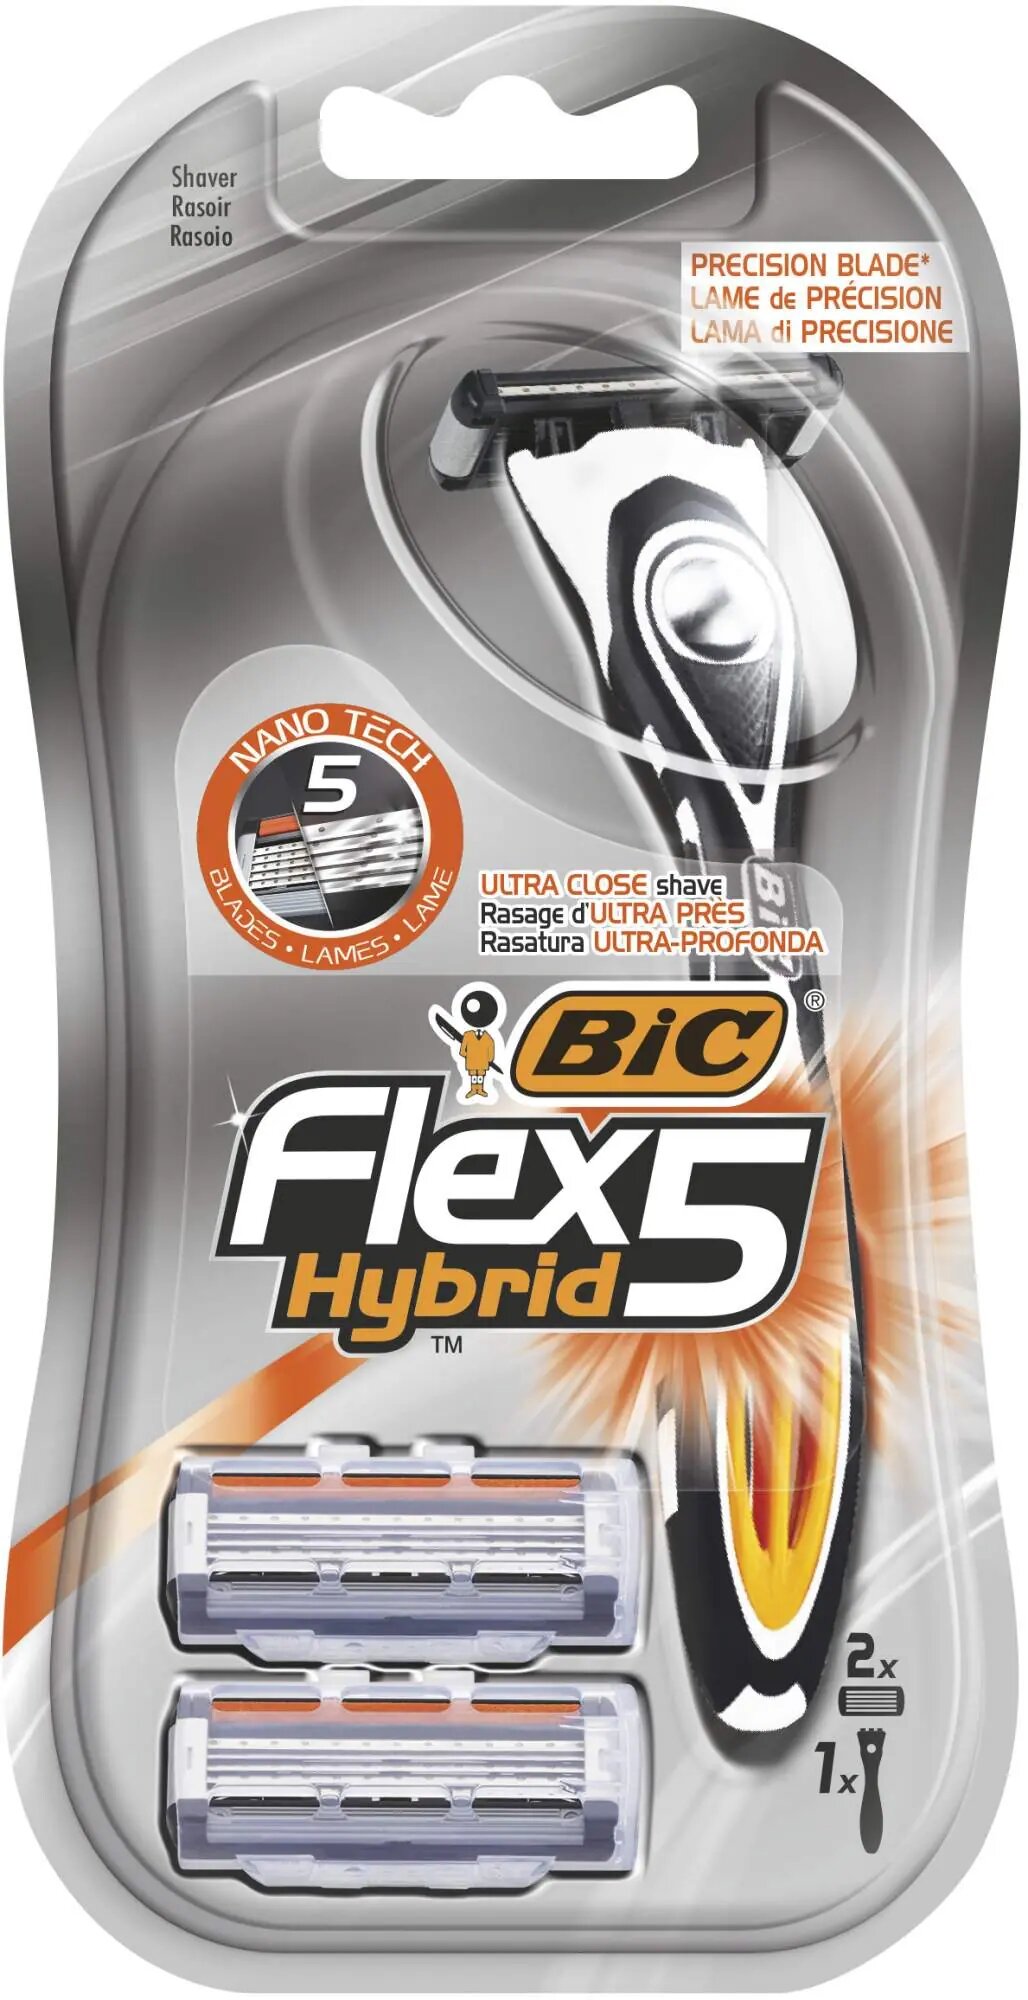 Бритва Bic Flex 5 Hybrid со сменными кассетами 1шт+2 кассеты - фото №19